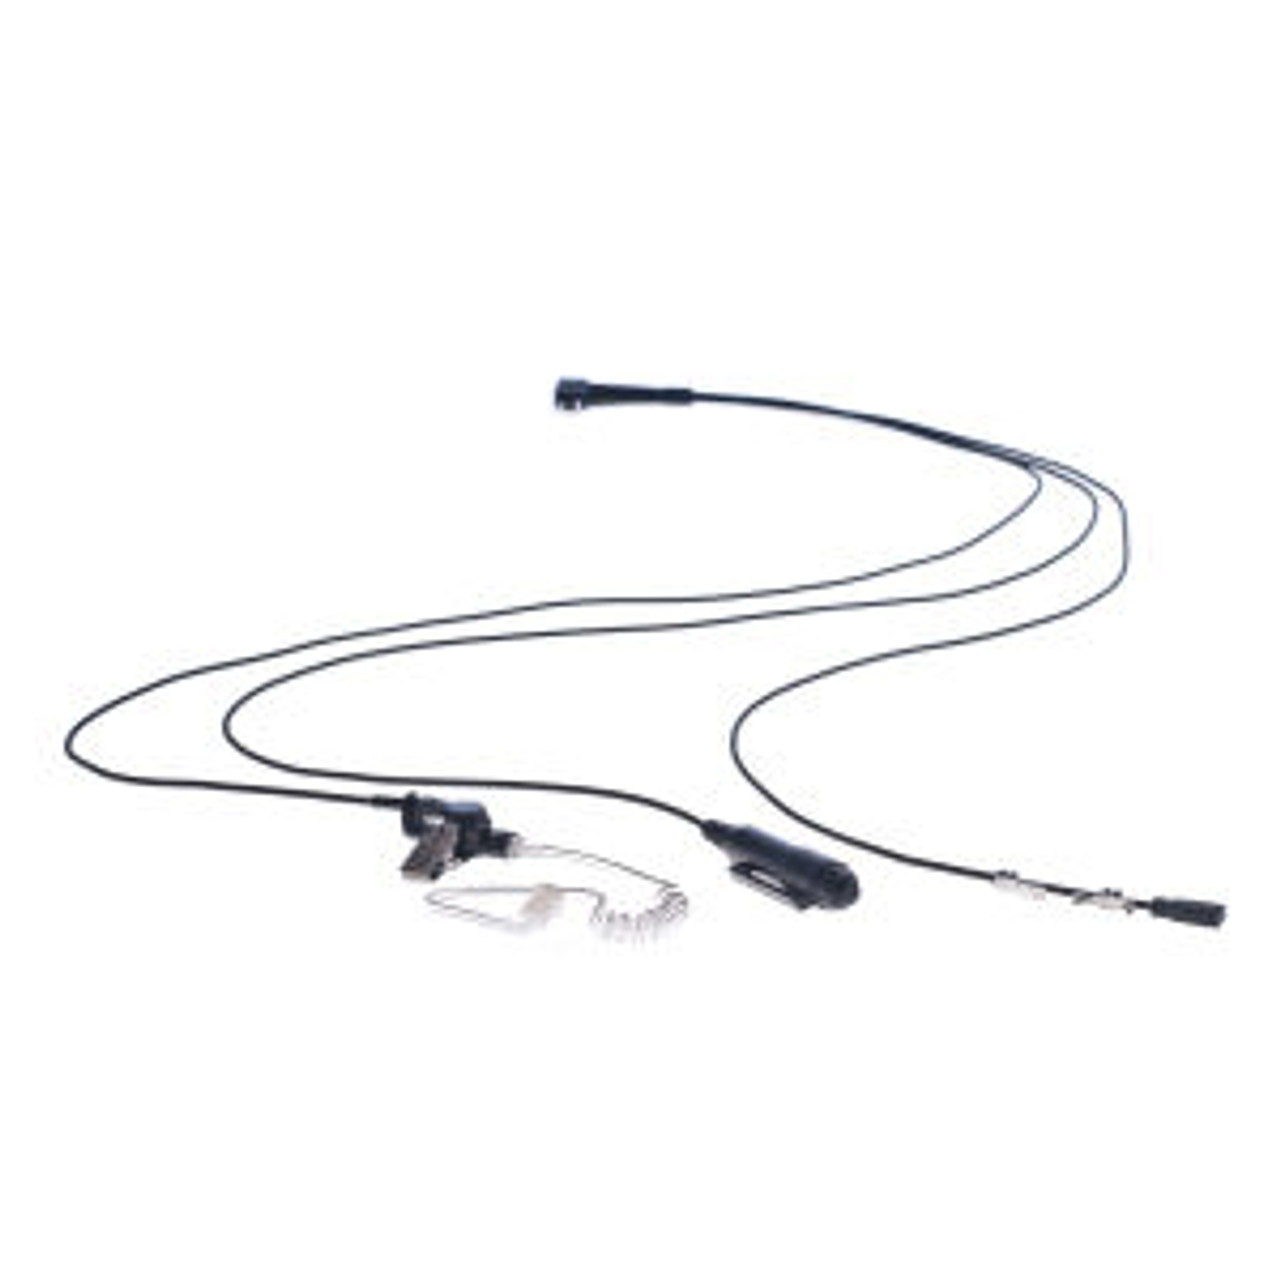 Harris P5170 3-Wire Surveillance Kit